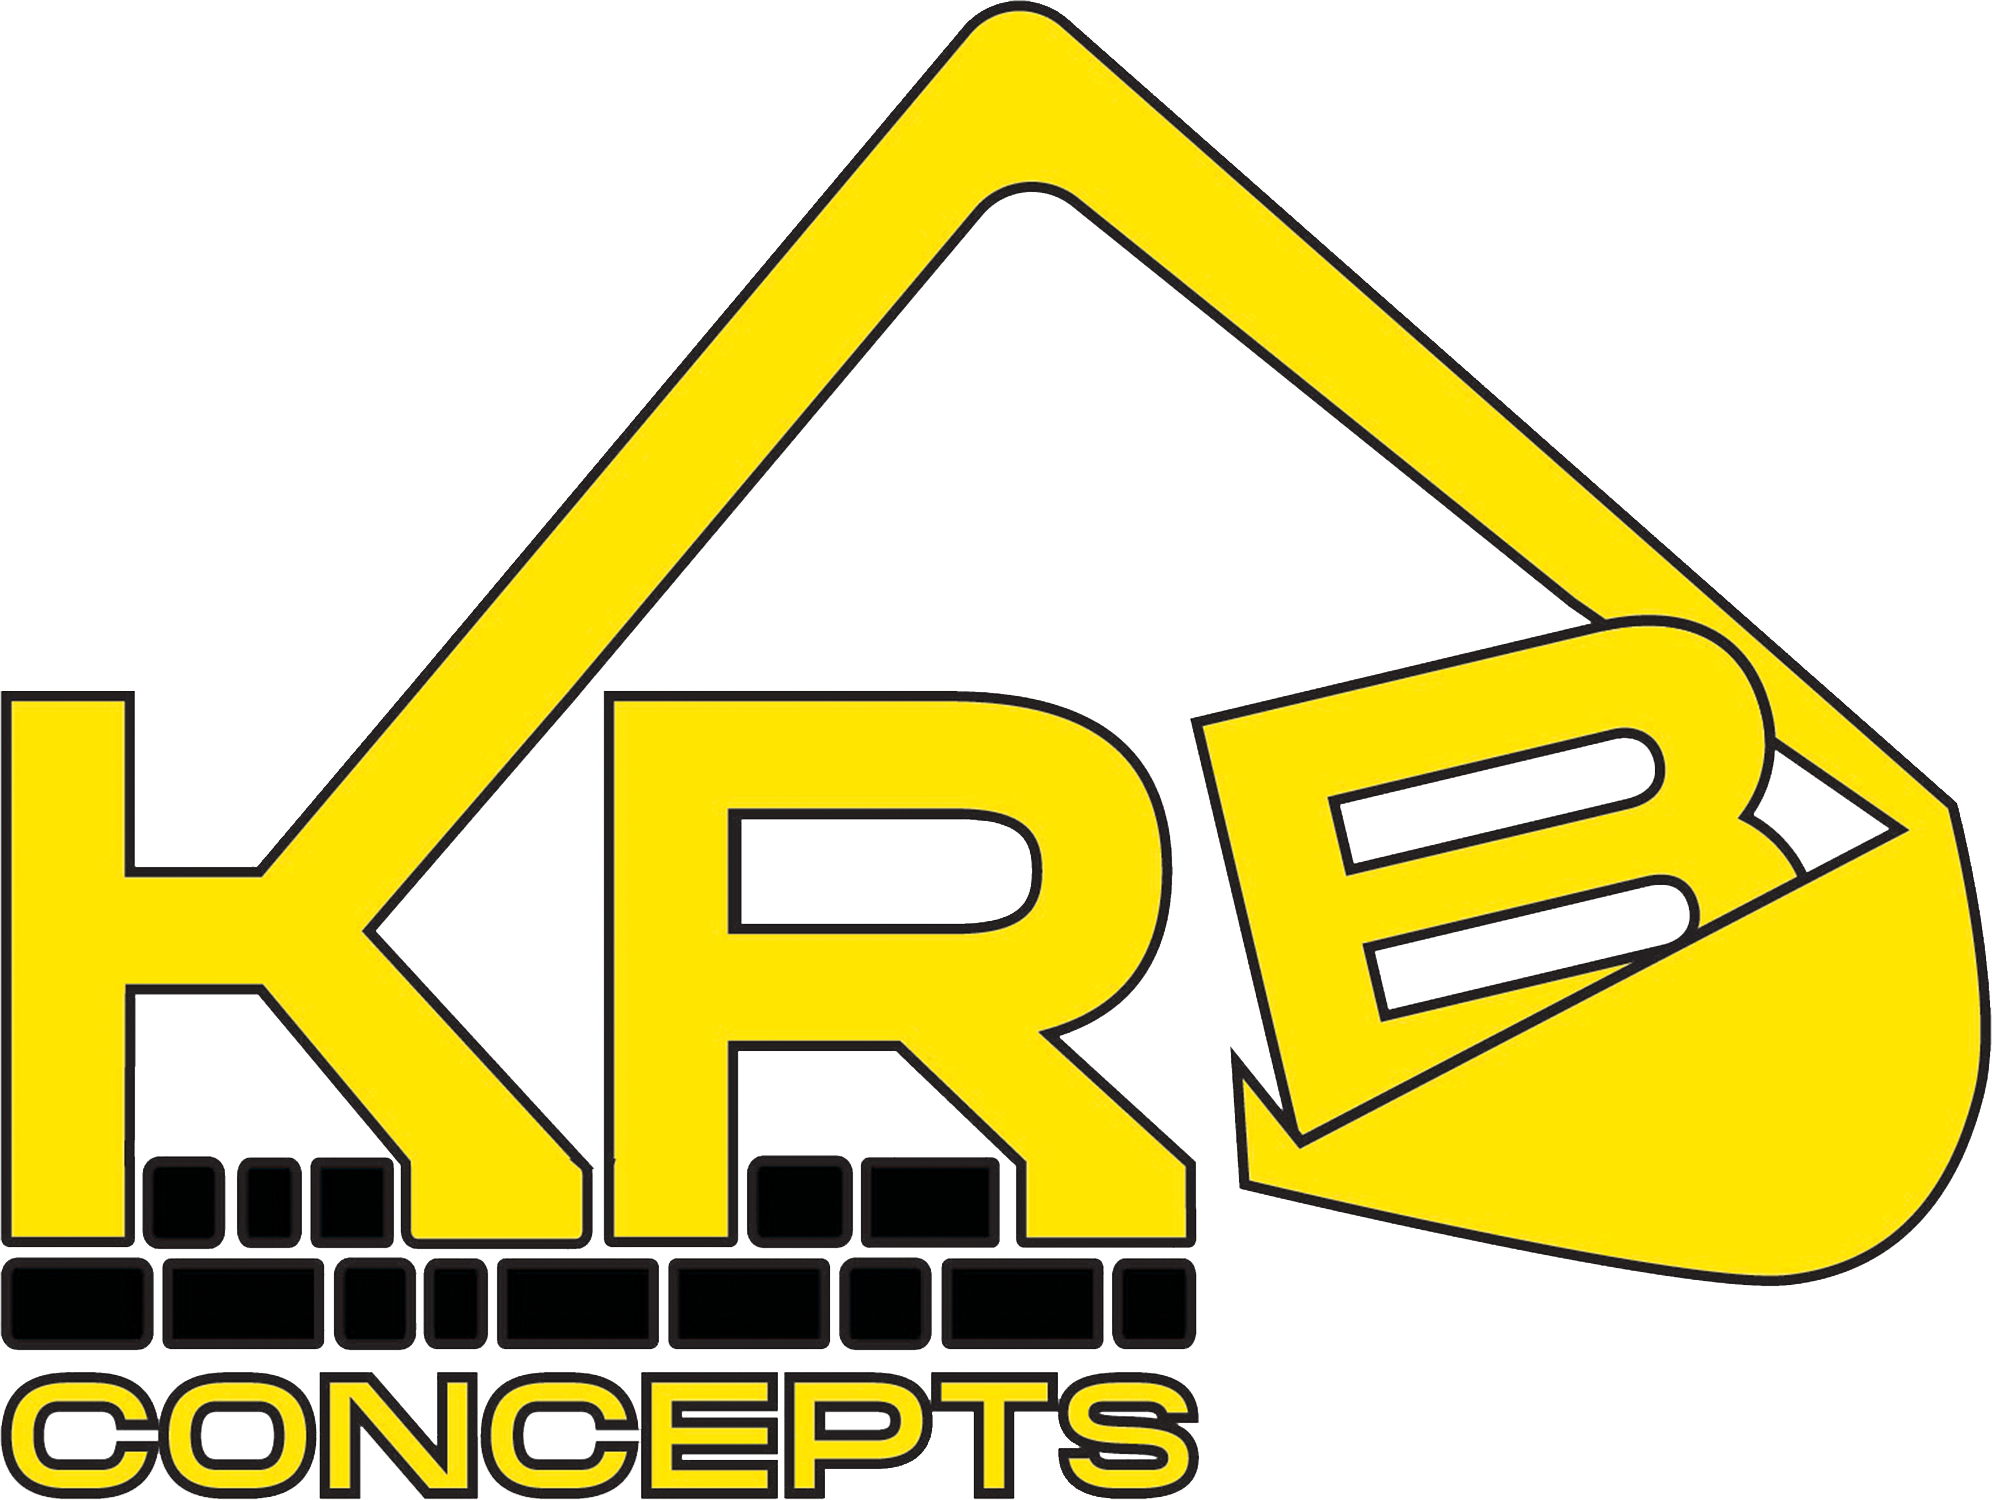 KRB Concepts LLC